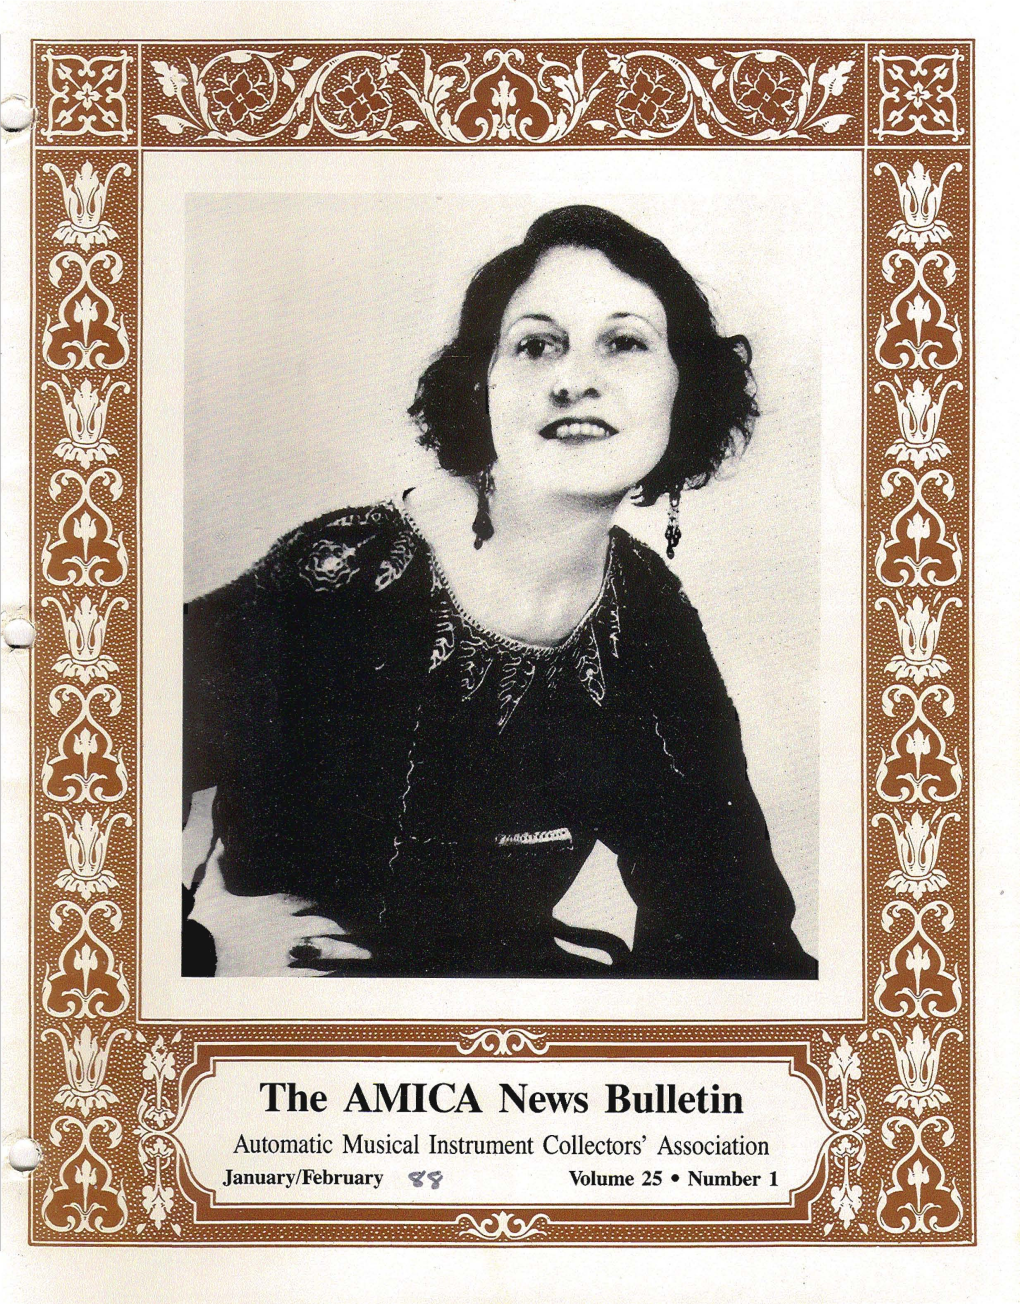 The AMICA News Bulletin